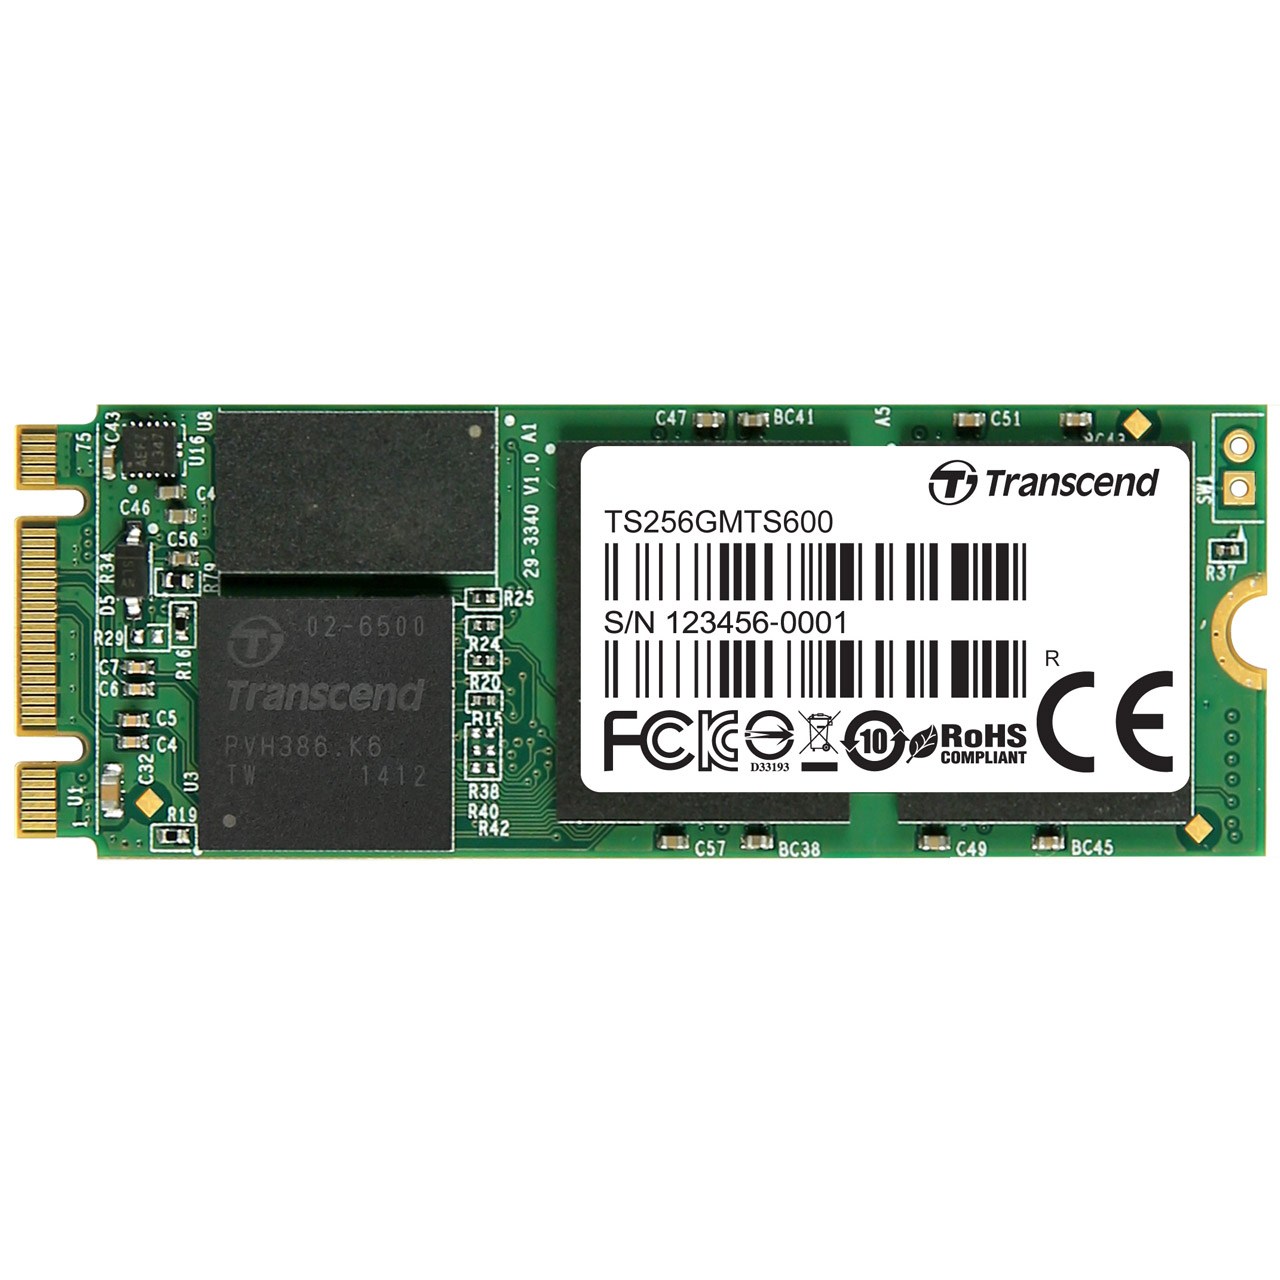 حافظه SSD سایز M.2 2260 ترنسند مدل MTS600 ظرفیت 256 گیگابایت